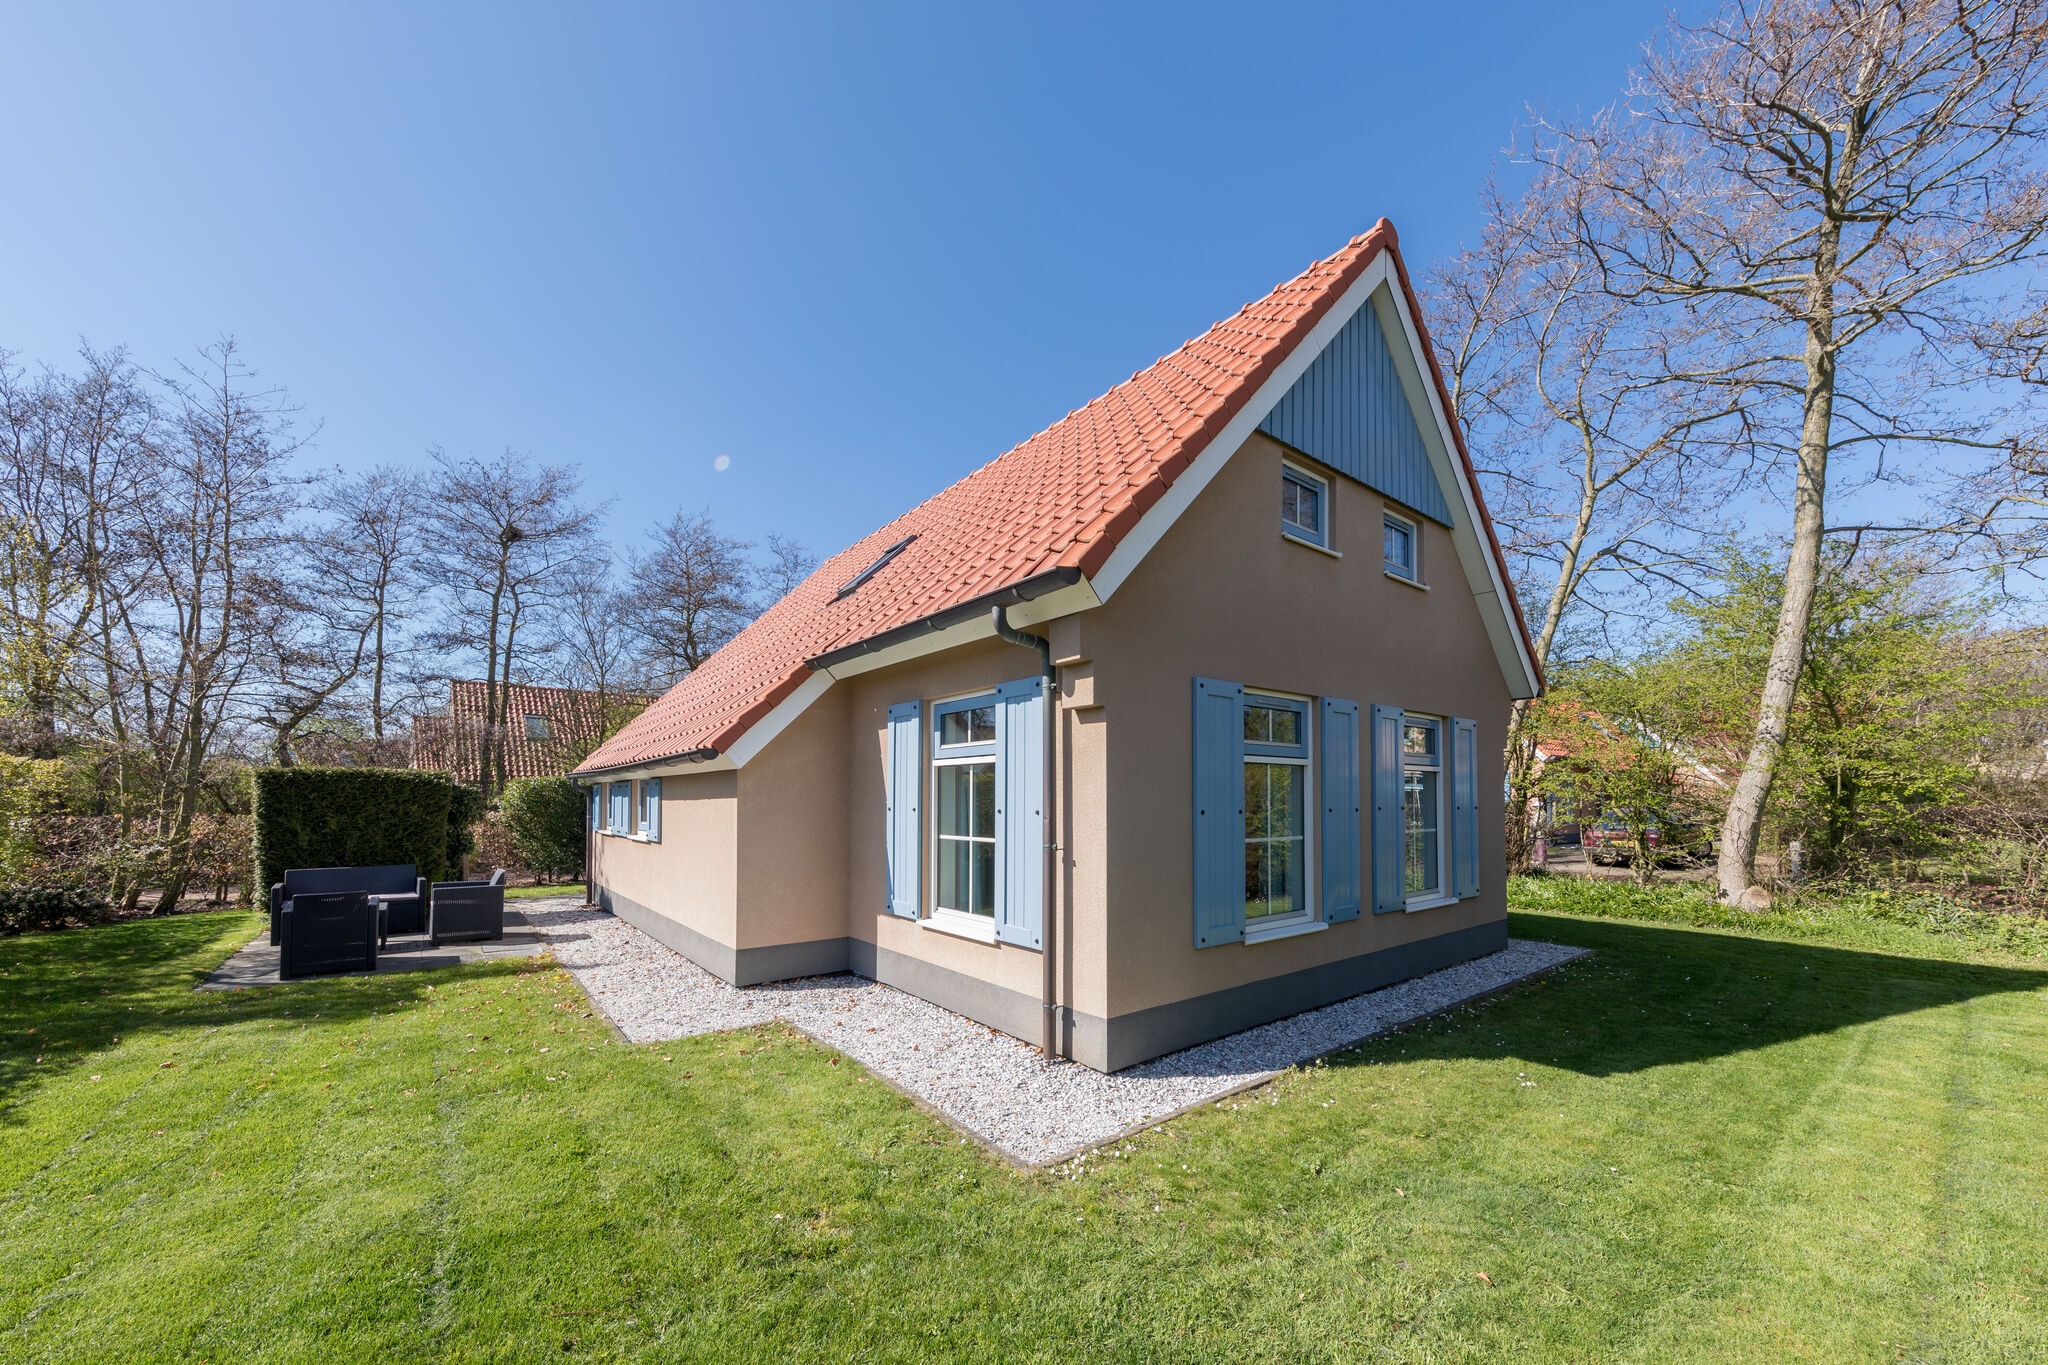 Maison rénovée avec lit box, sur Texel, mer à 2 km